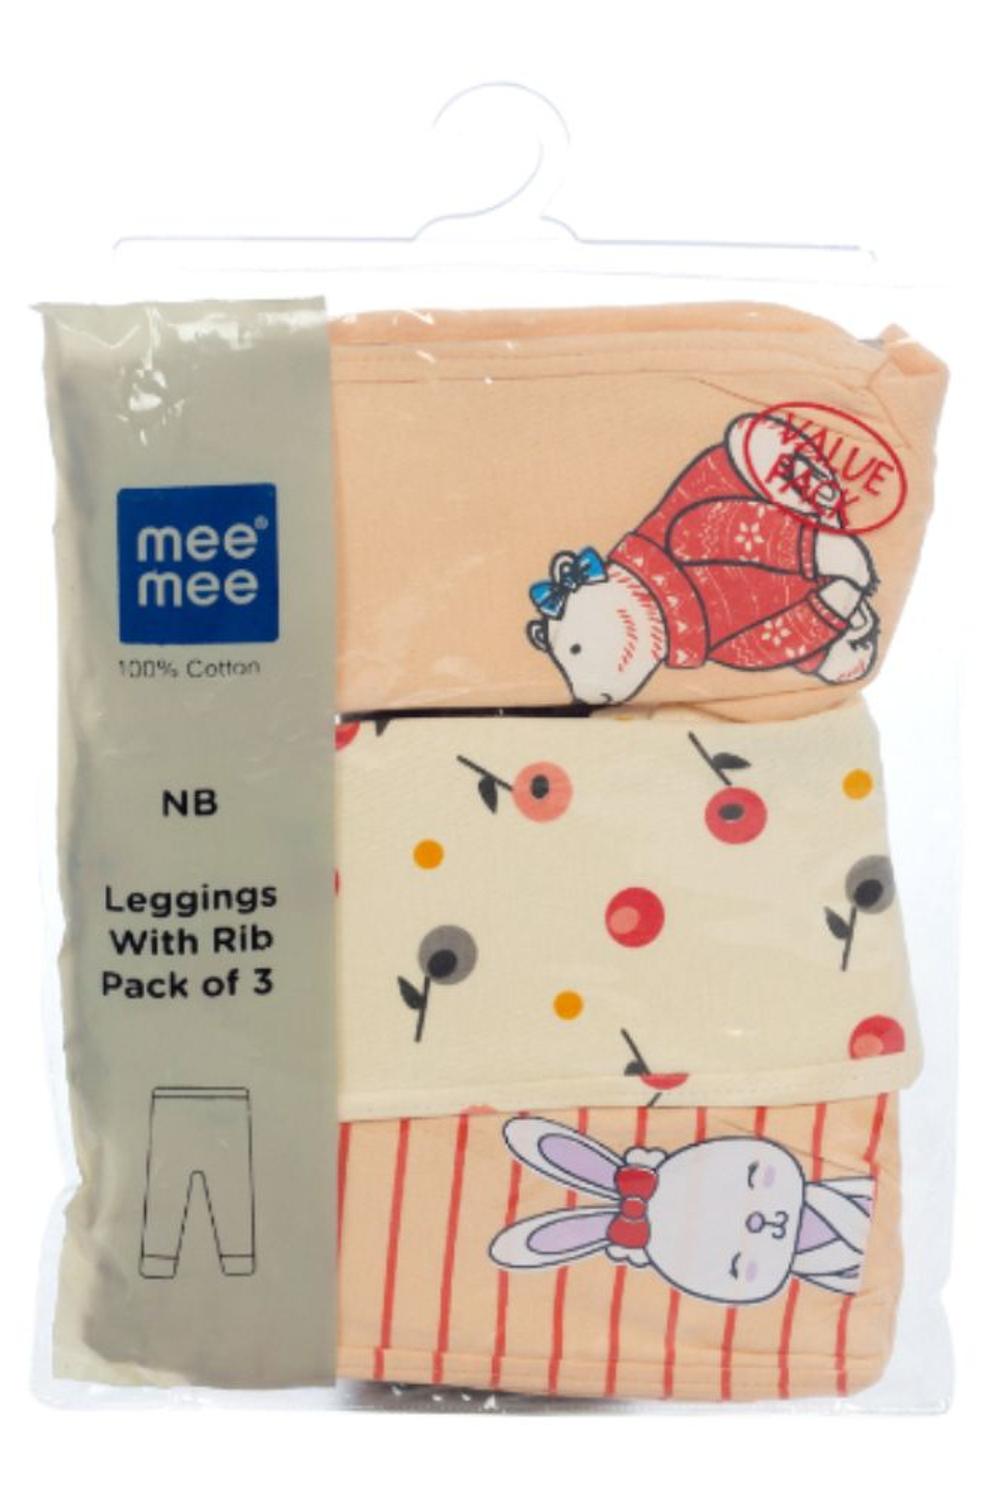 Mee Mee Girls Leggings Pack Of 3